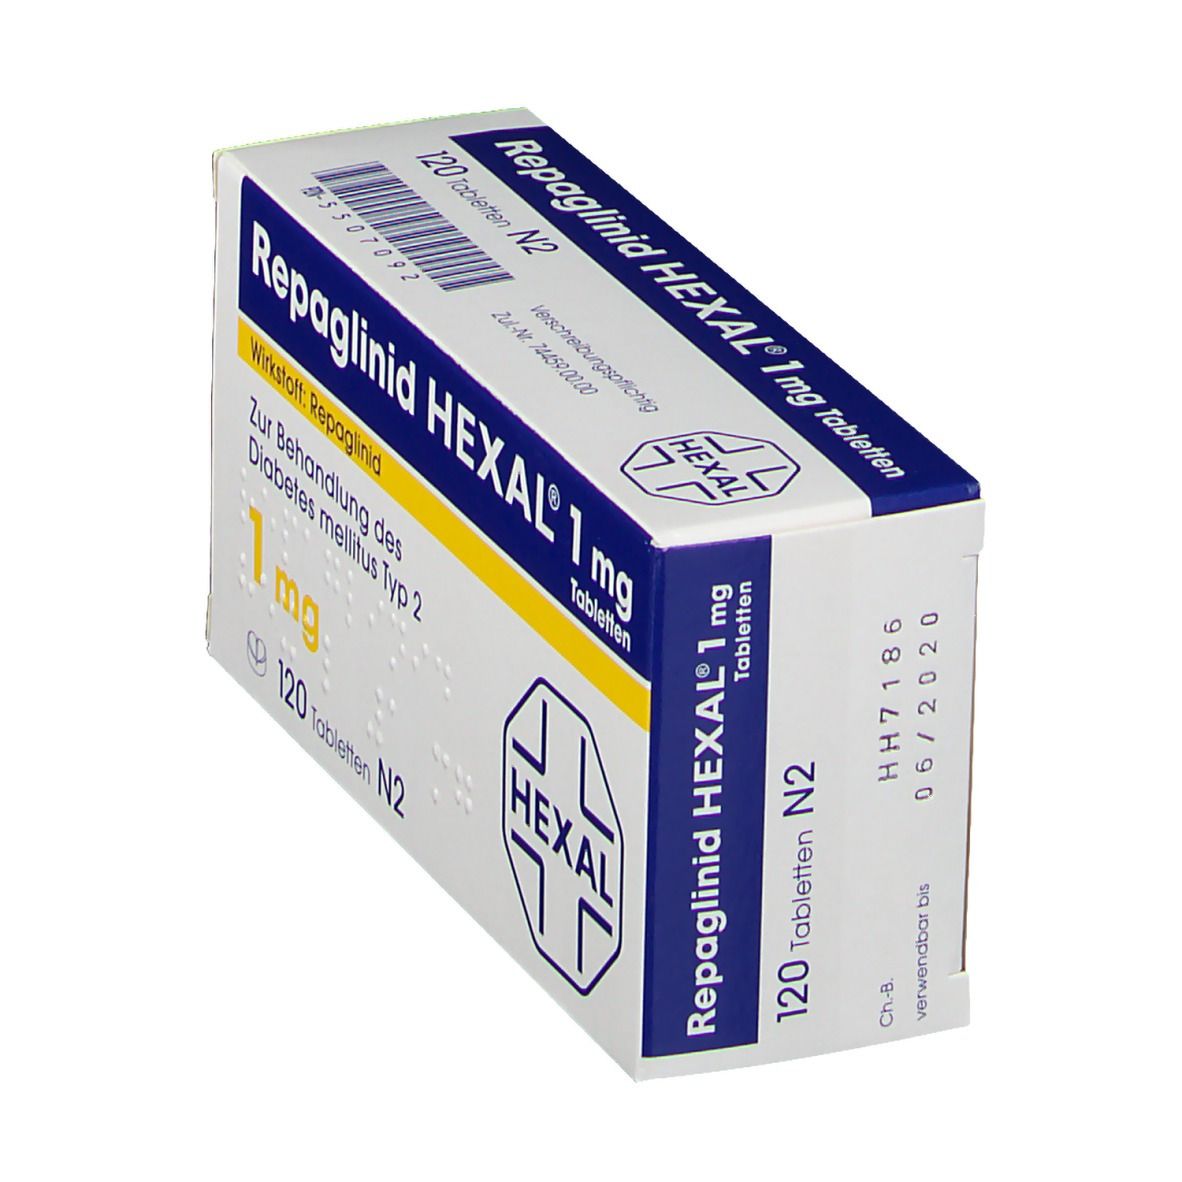 Repaglinid Hexal 1 mg Tabletten